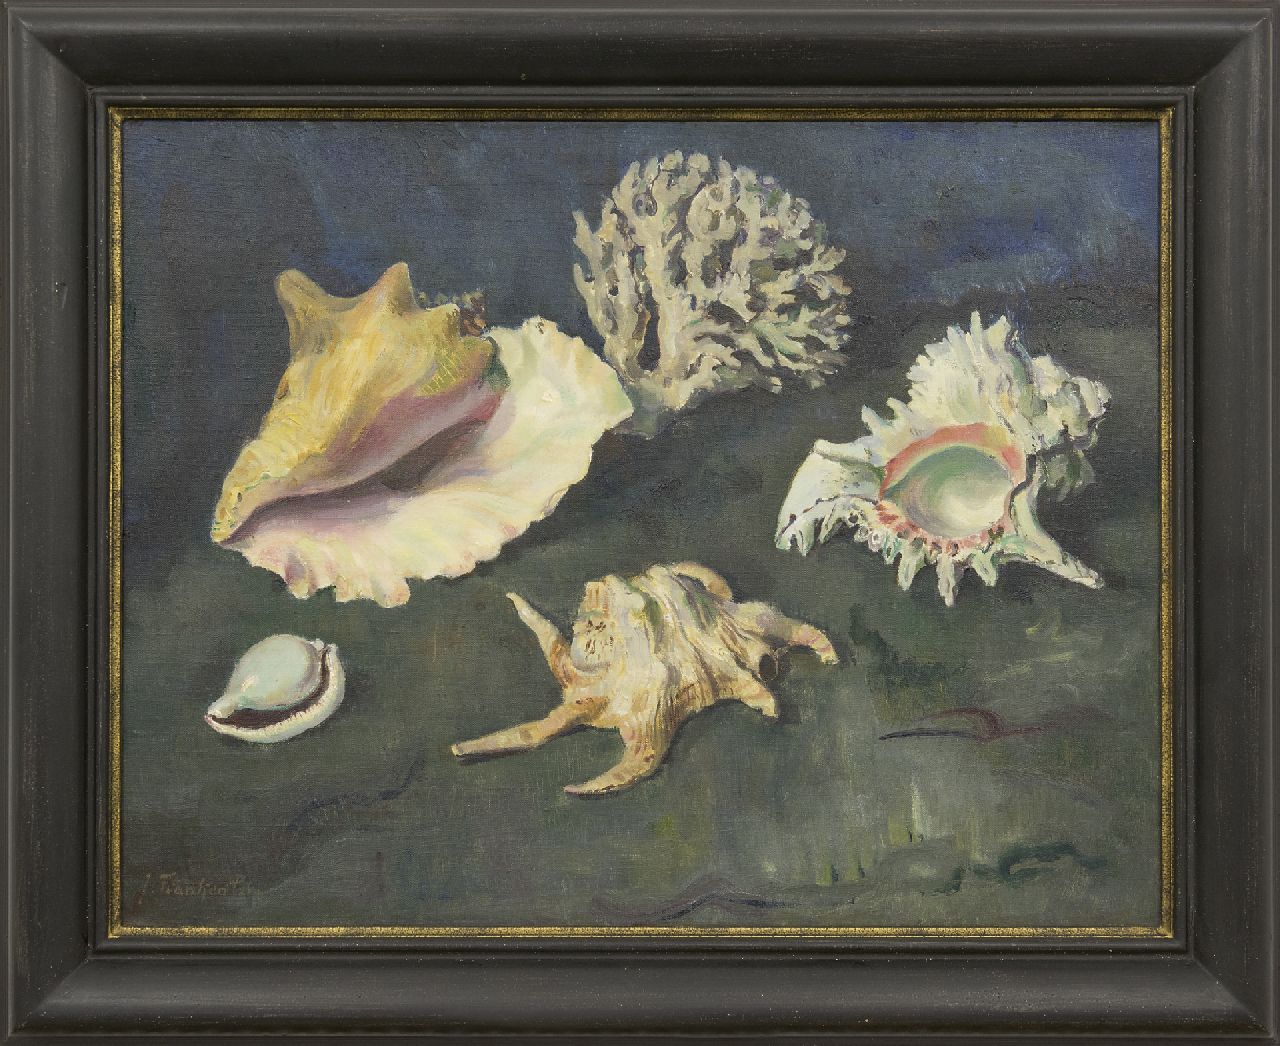 Franken J.P.J.  | Joannes Petrus Josephus 'Jan' Franken, Schelpen en koraal, olieverf op doek 50,2 x 65,2 cm, gesigneerd linksonder